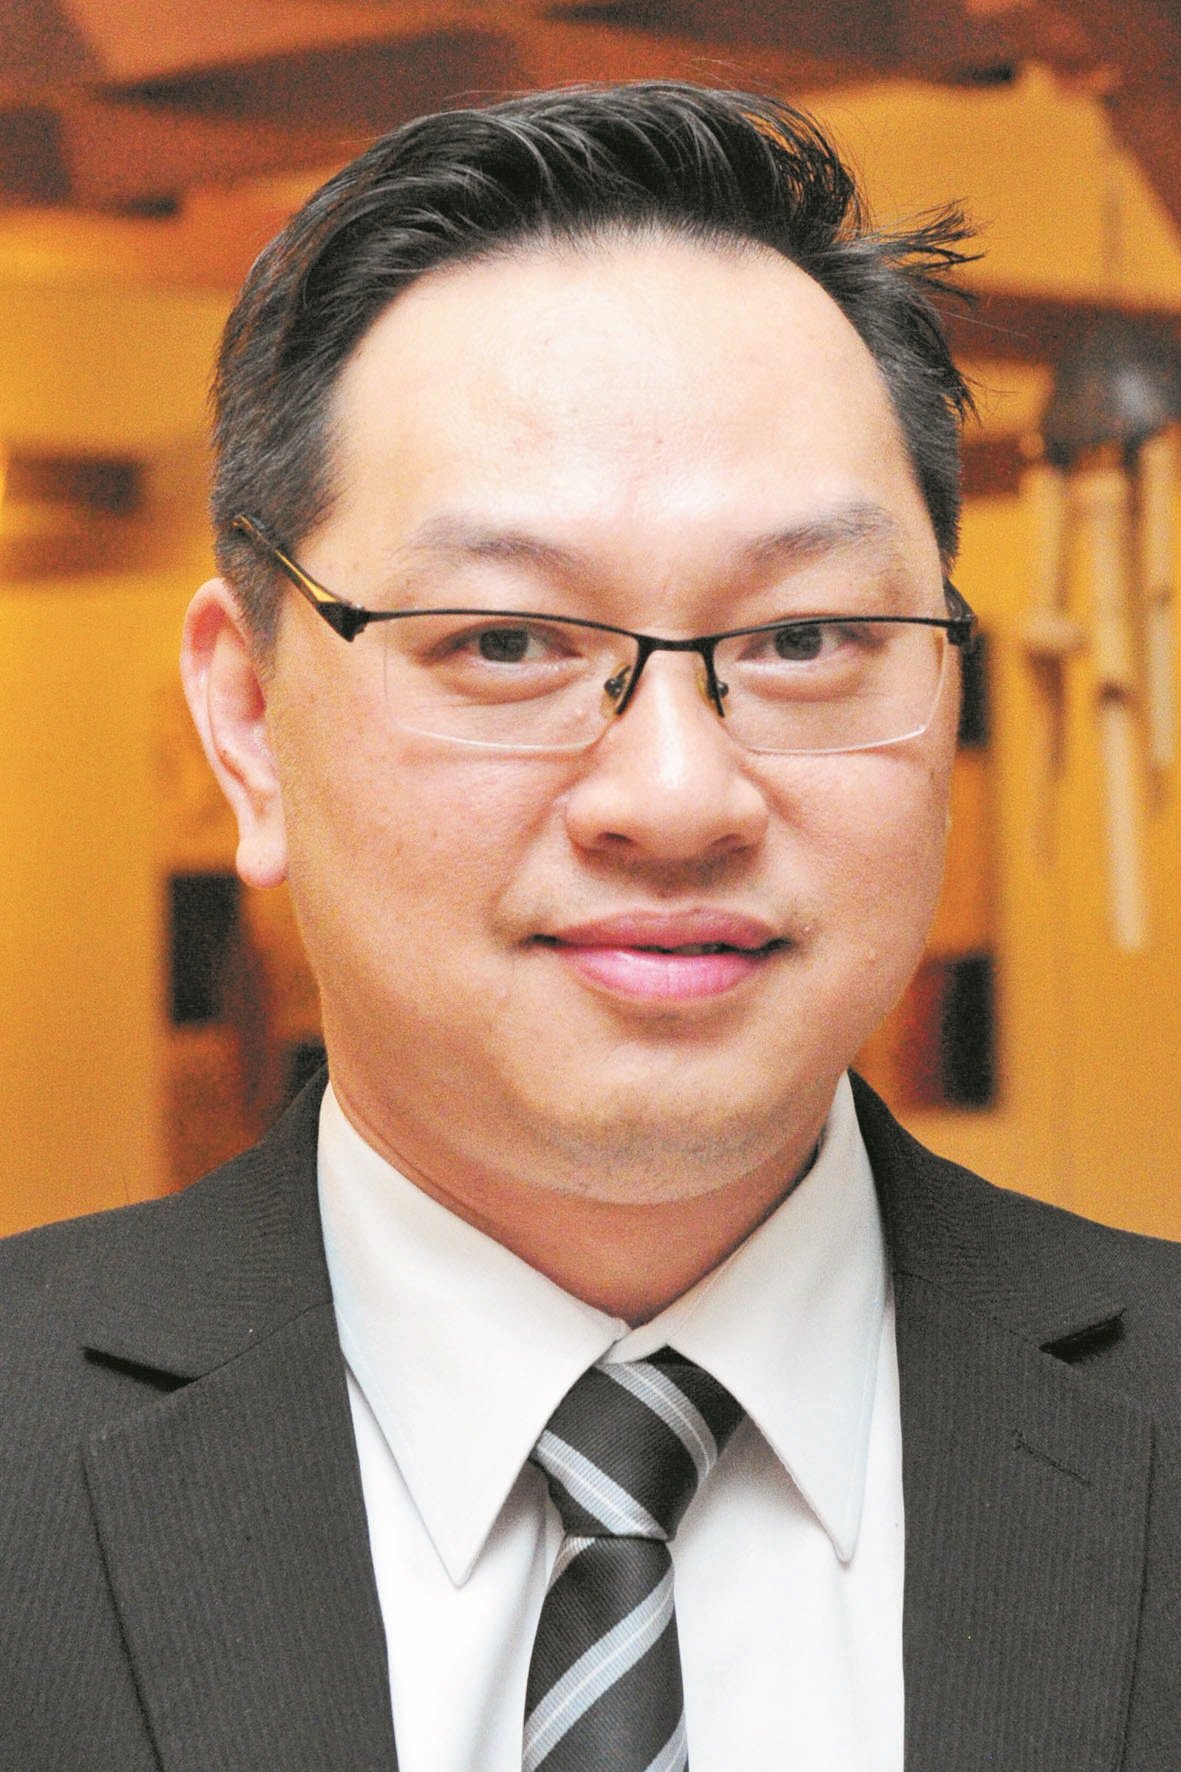 柔公正党署理主席潘伟斯驳斥振林山区部执委对其的指控，同时保留法律追究权力。